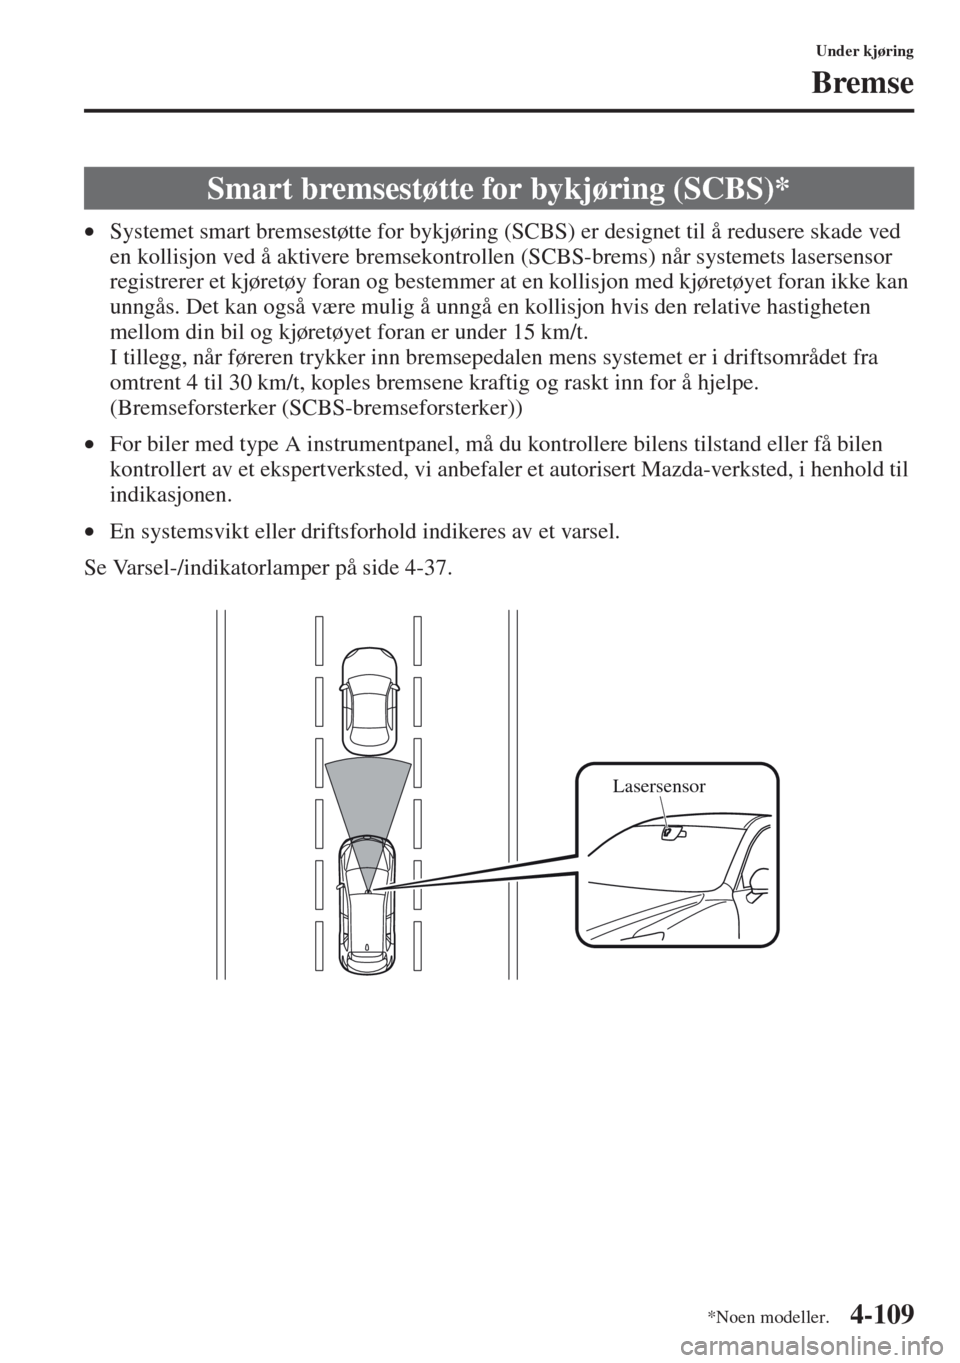 MAZDA MODEL CX-5 2013  Brukerhåndbok (in Norwegian) 4-109
Under kjøring
Bremse
•Systemet smart bremsestøtte for bykjøring (SCBS) er designet til å redusere skade ved 
en kollisjon ved å aktivere bremsekontrollen (SCBS-brems) når systemets laser